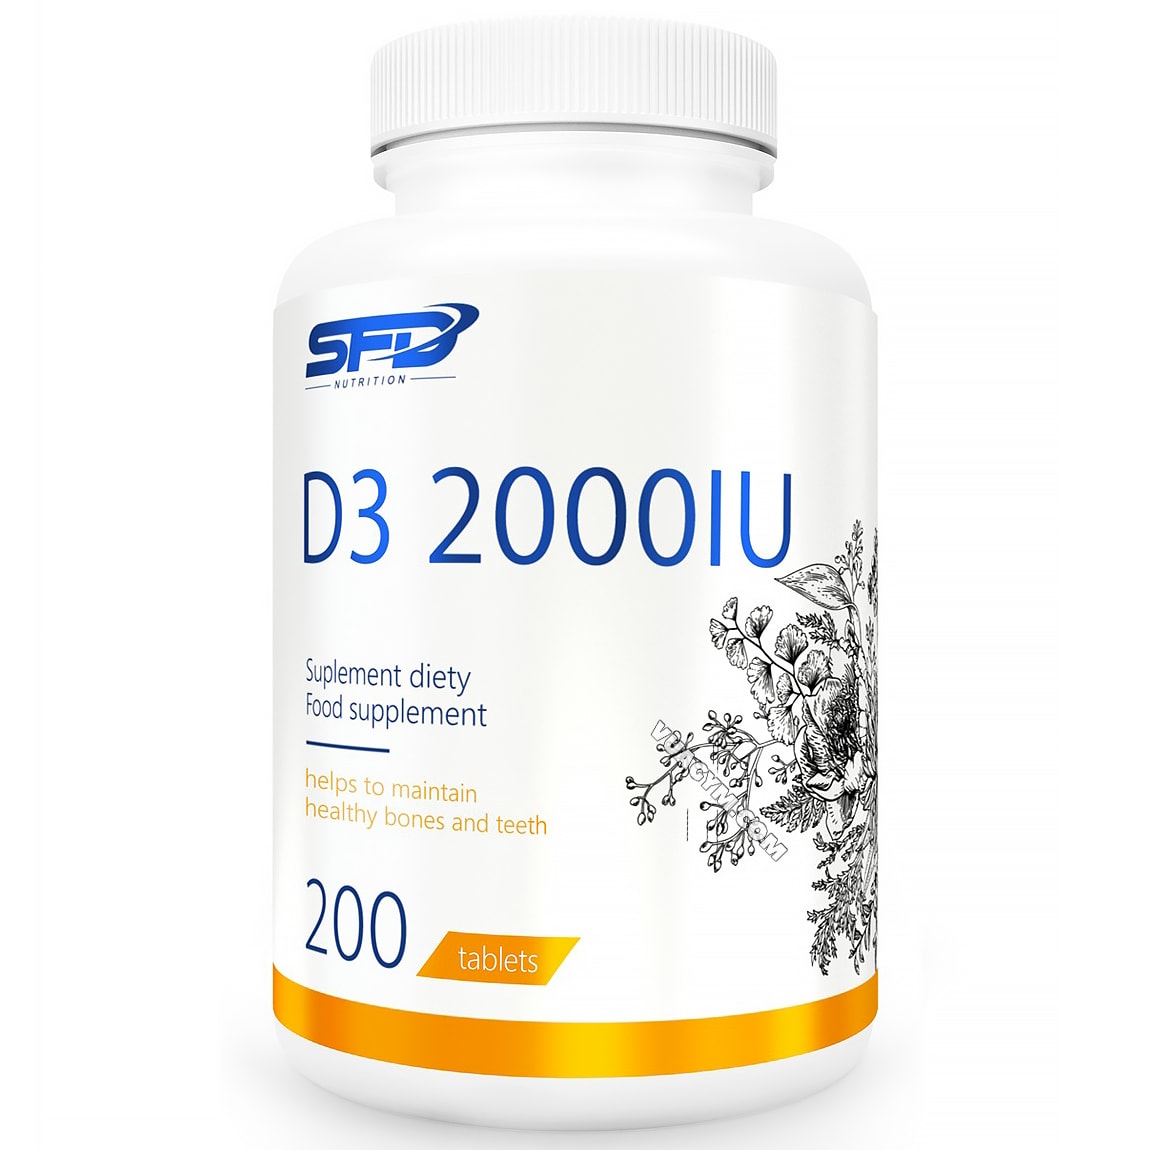 Tần suất và thời gian sử dụng viên uống Vitamin D3 là bao lâu để đạt hiệu quả nhất?
